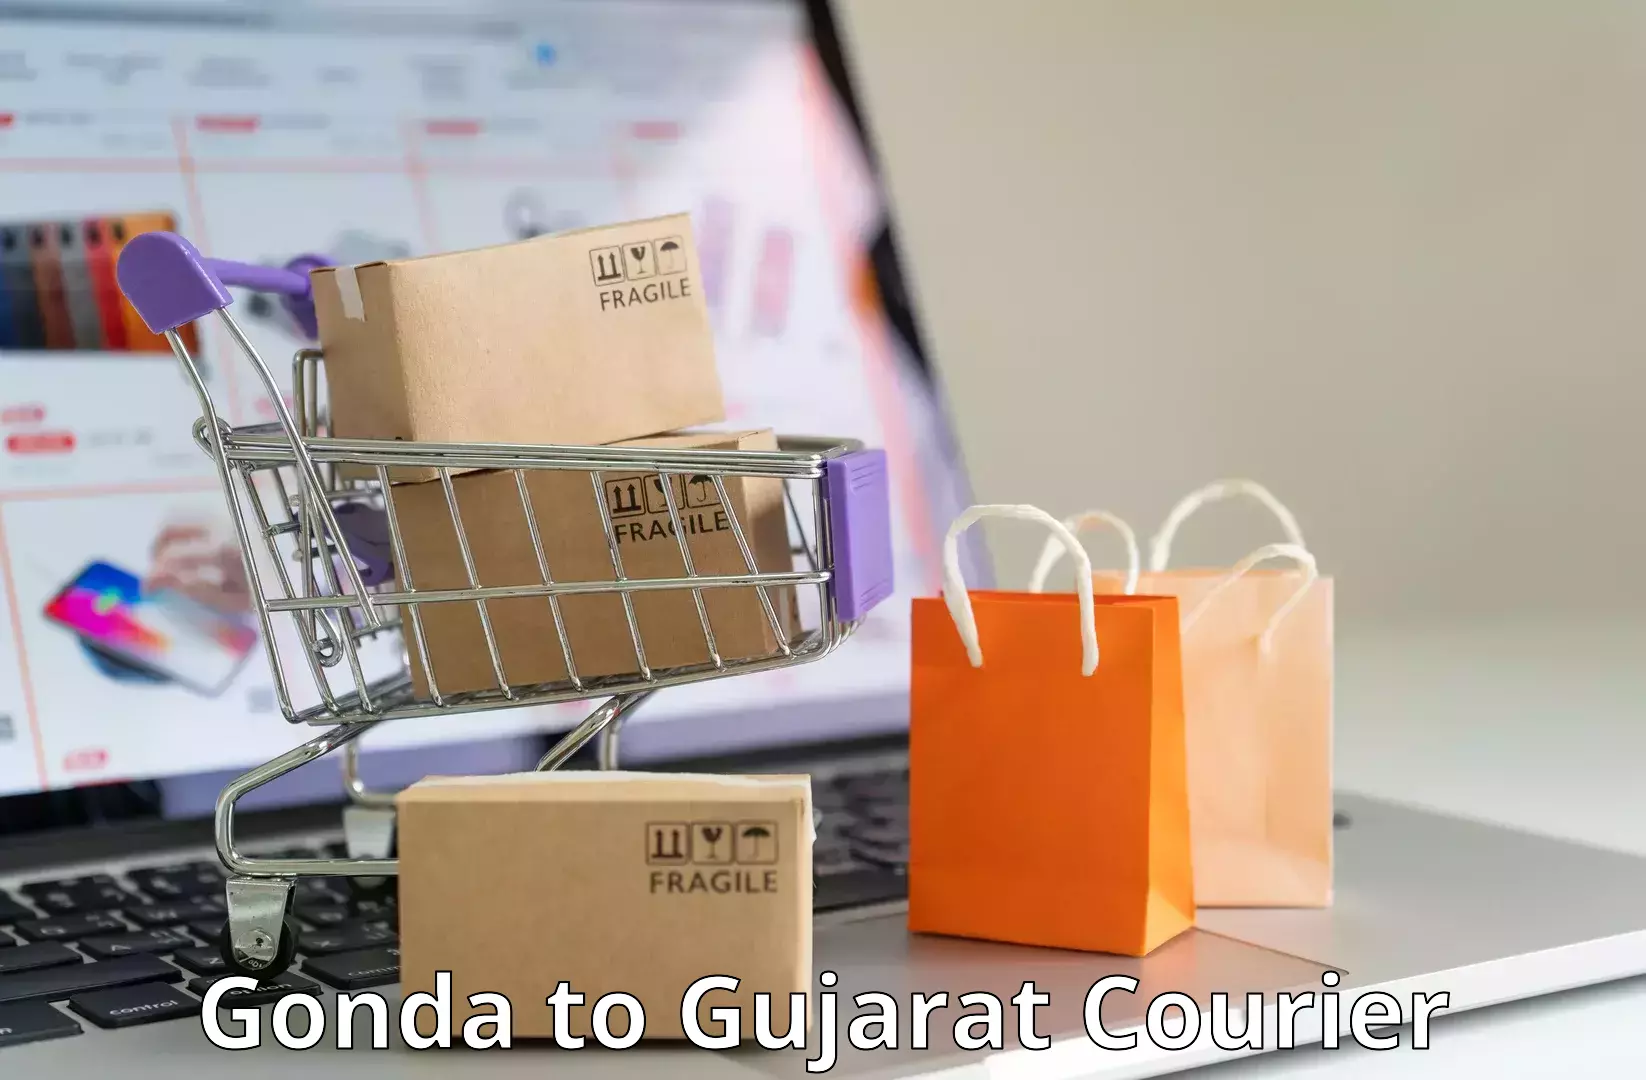 Small parcel delivery Gonda to Gandhinagar